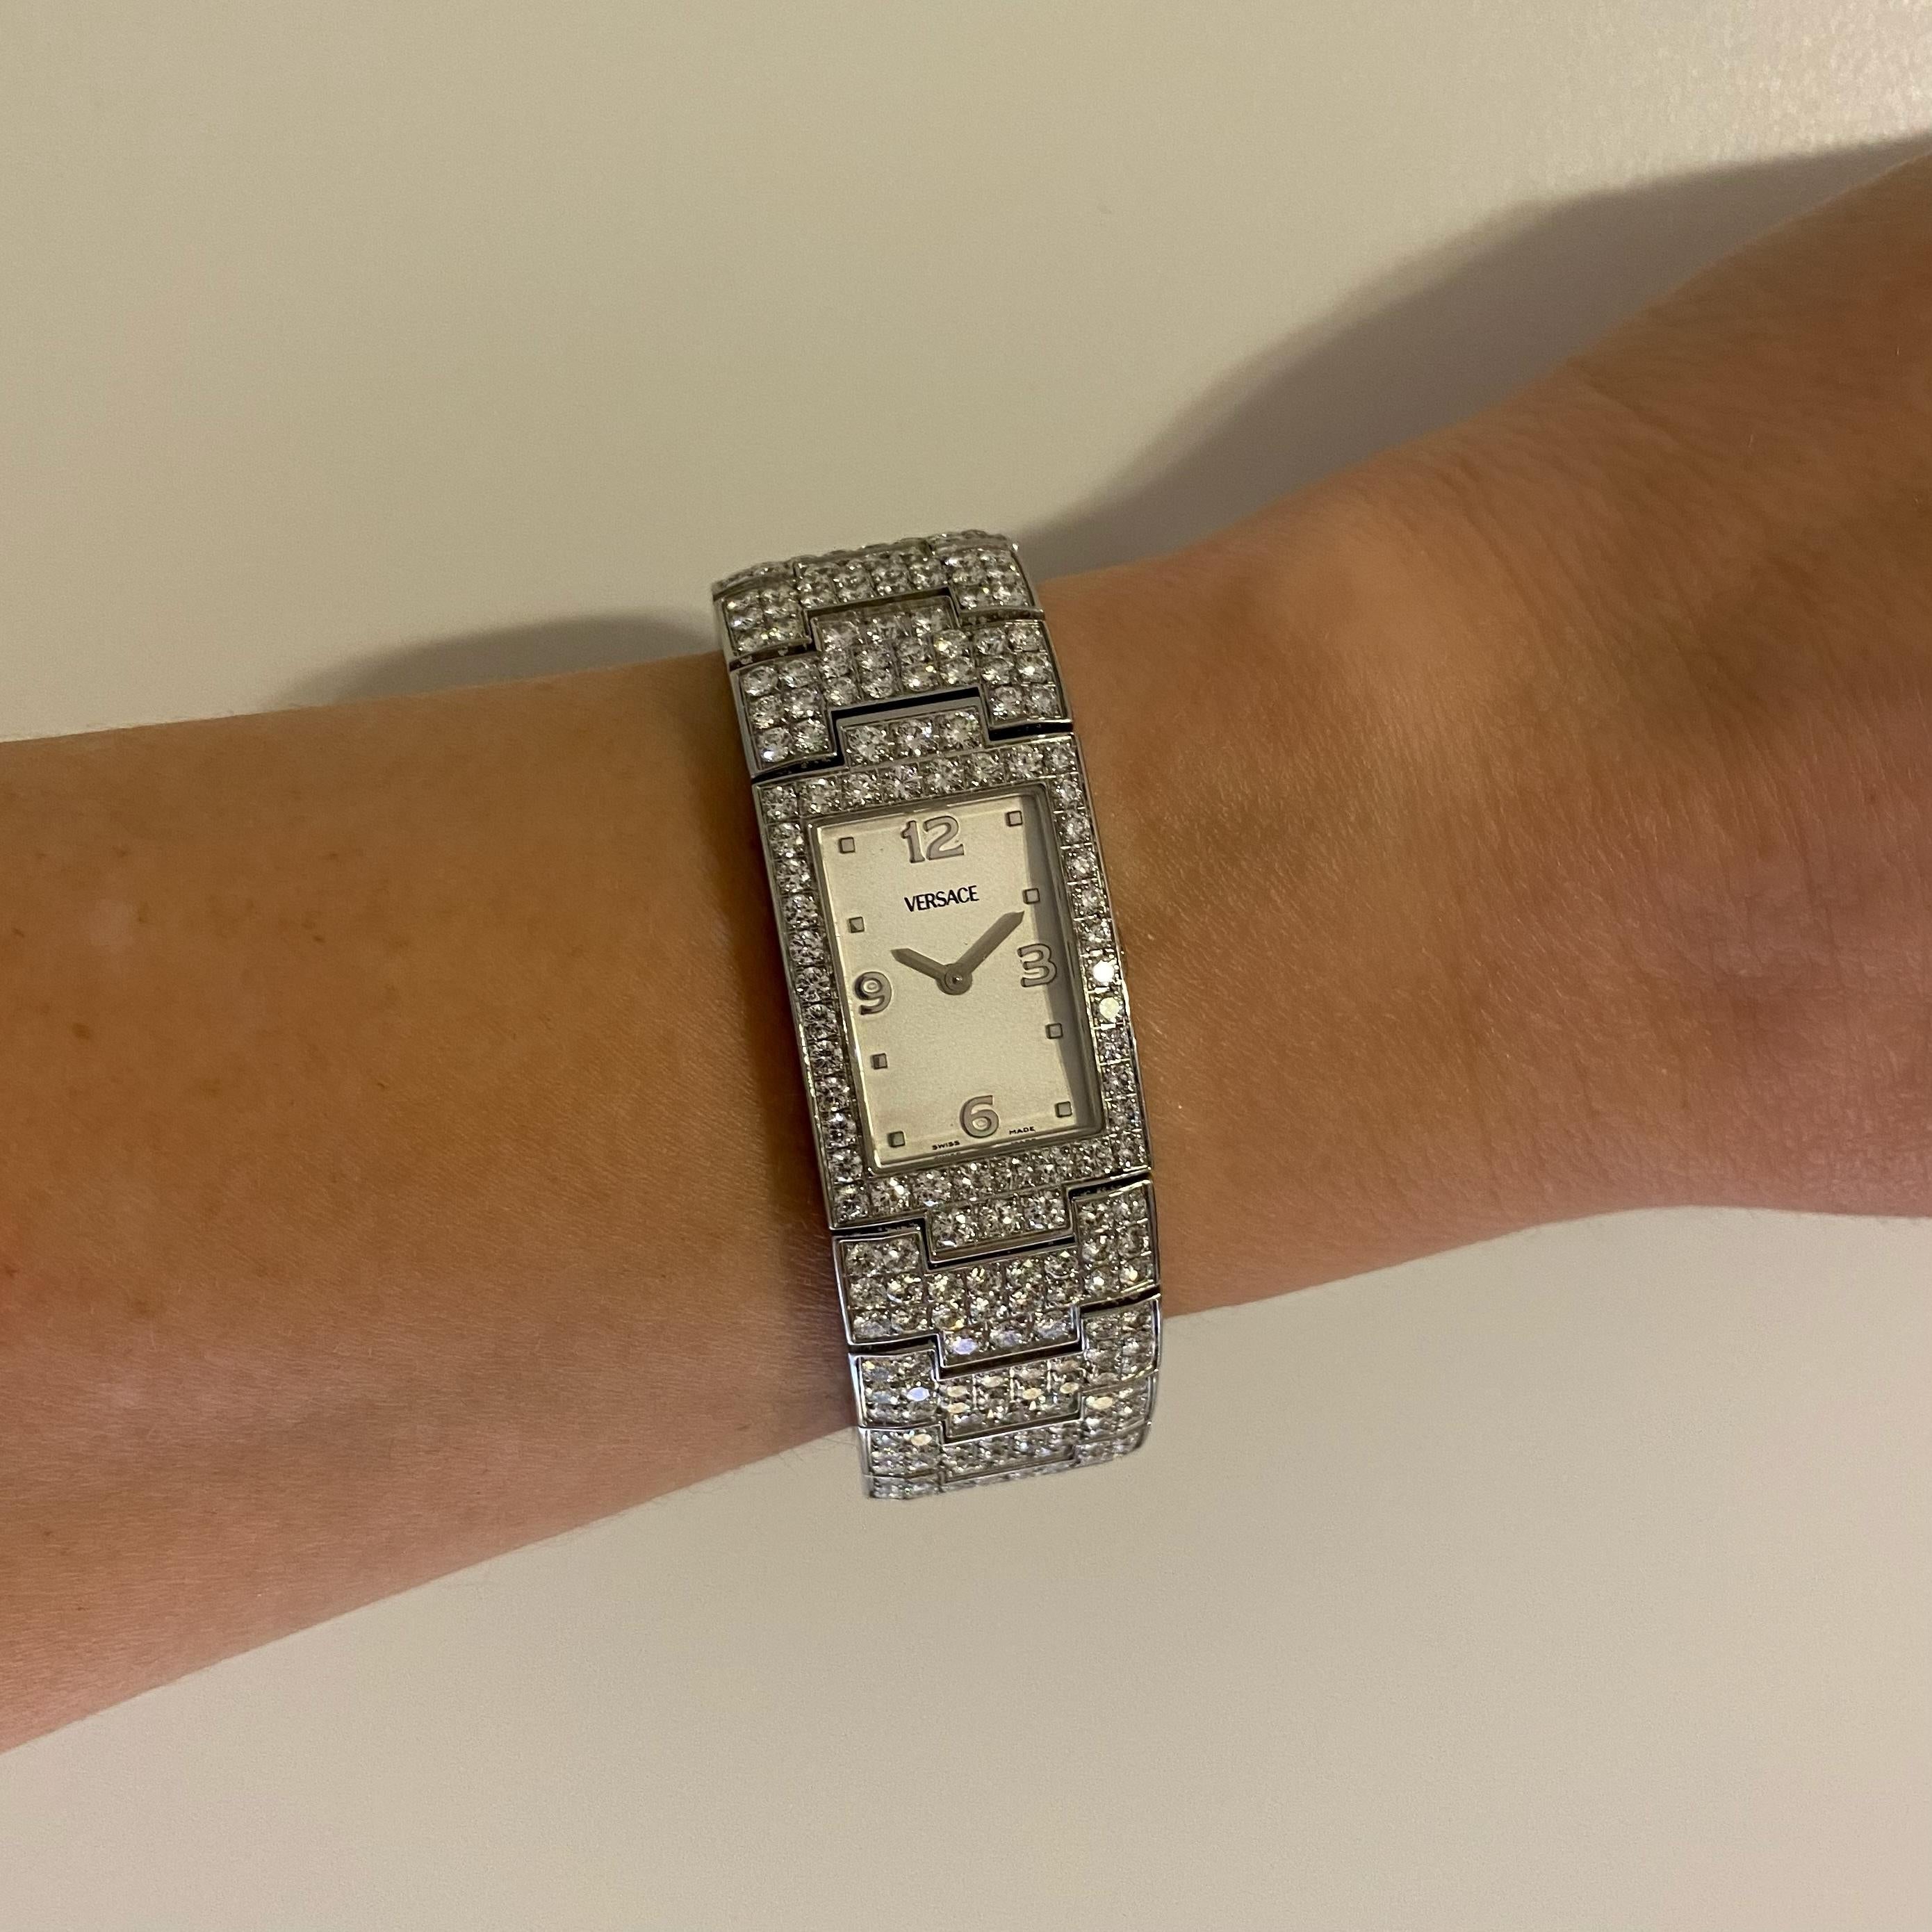 Sencillamente hermoso Raro reloj de pulsera Versace Greca 990139 de acero inoxidable con diamantes. Reloj y pulsera engastados a mano con 446 diamantes redondos talla brillante, con un peso aproximado de 15,75 tcw. Fabricación suiza, movimiento de